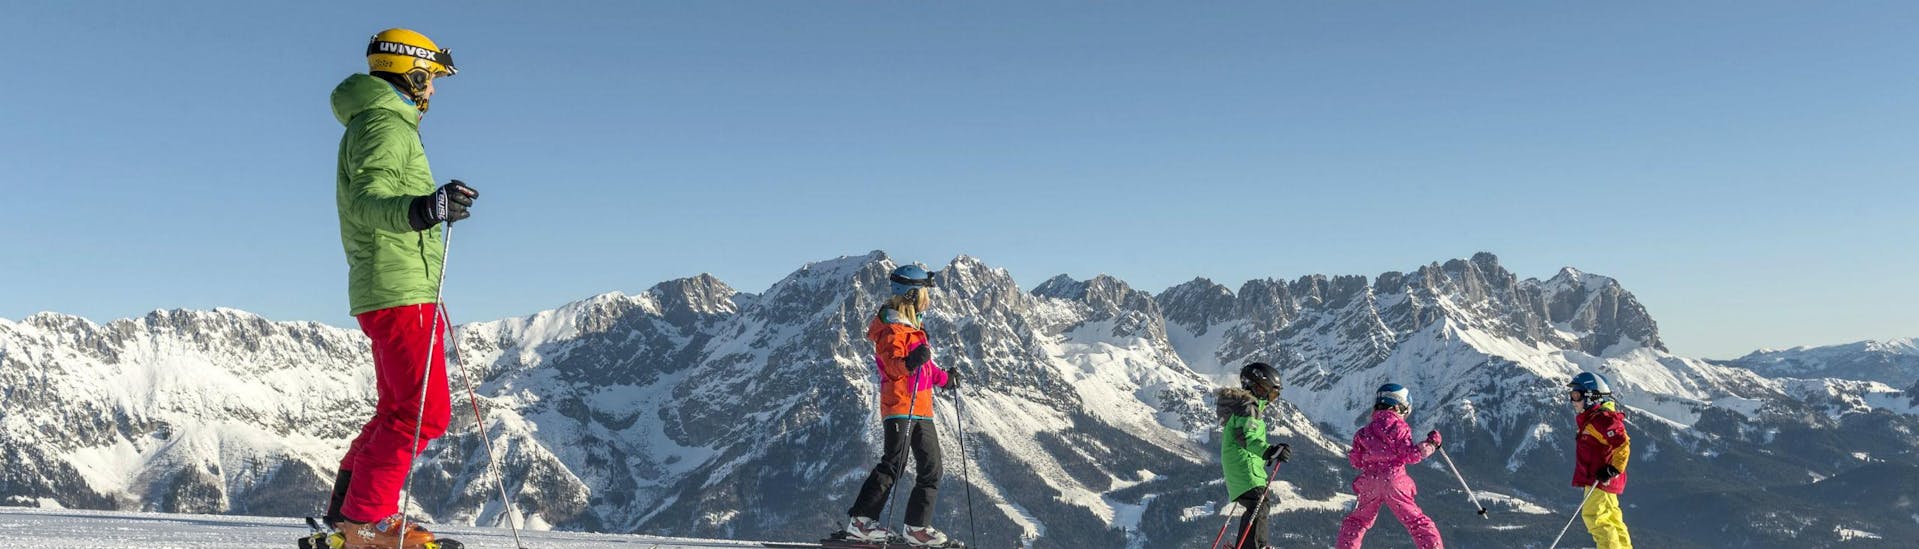 Eine Familie verbringt einen gemeinsamen Tag auf den Skipisten von Going-Ellmau, wo örtliche Skischulen ihre Skikurse für all jene die das Skifahren lernen wollen durchführen.